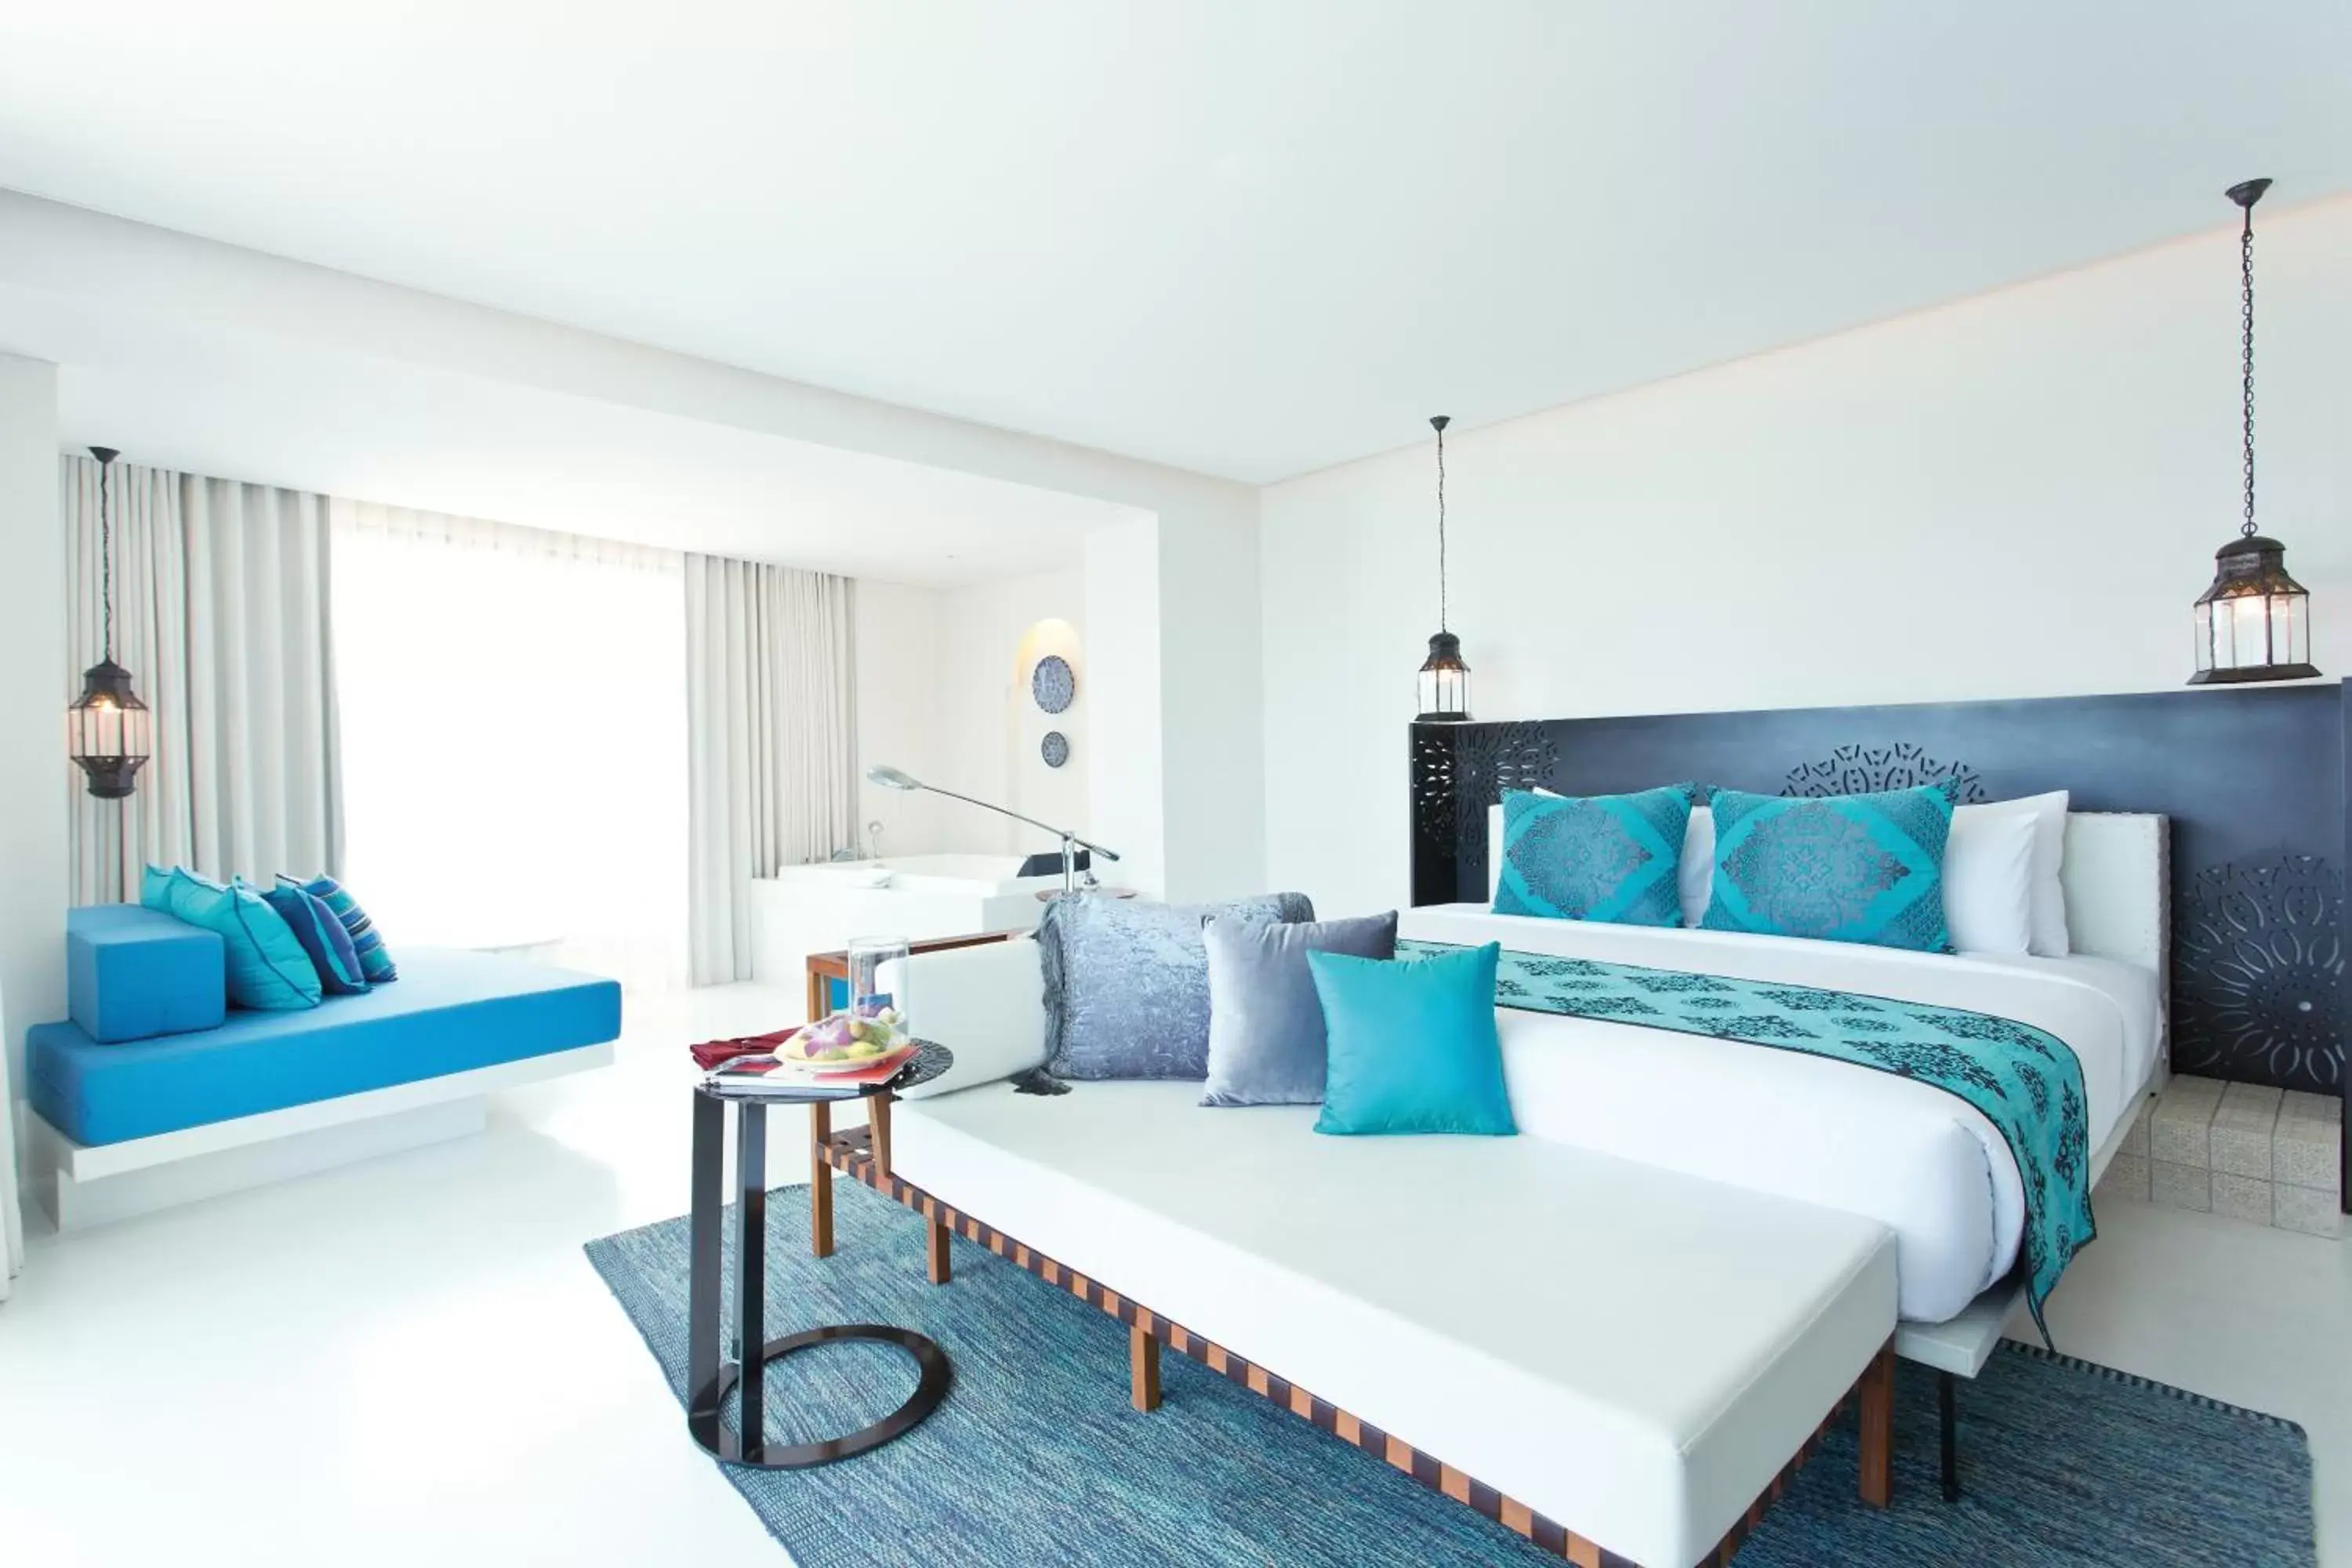 Bedroom, Bed in Marrakesh Hua Hin Resort & Spa